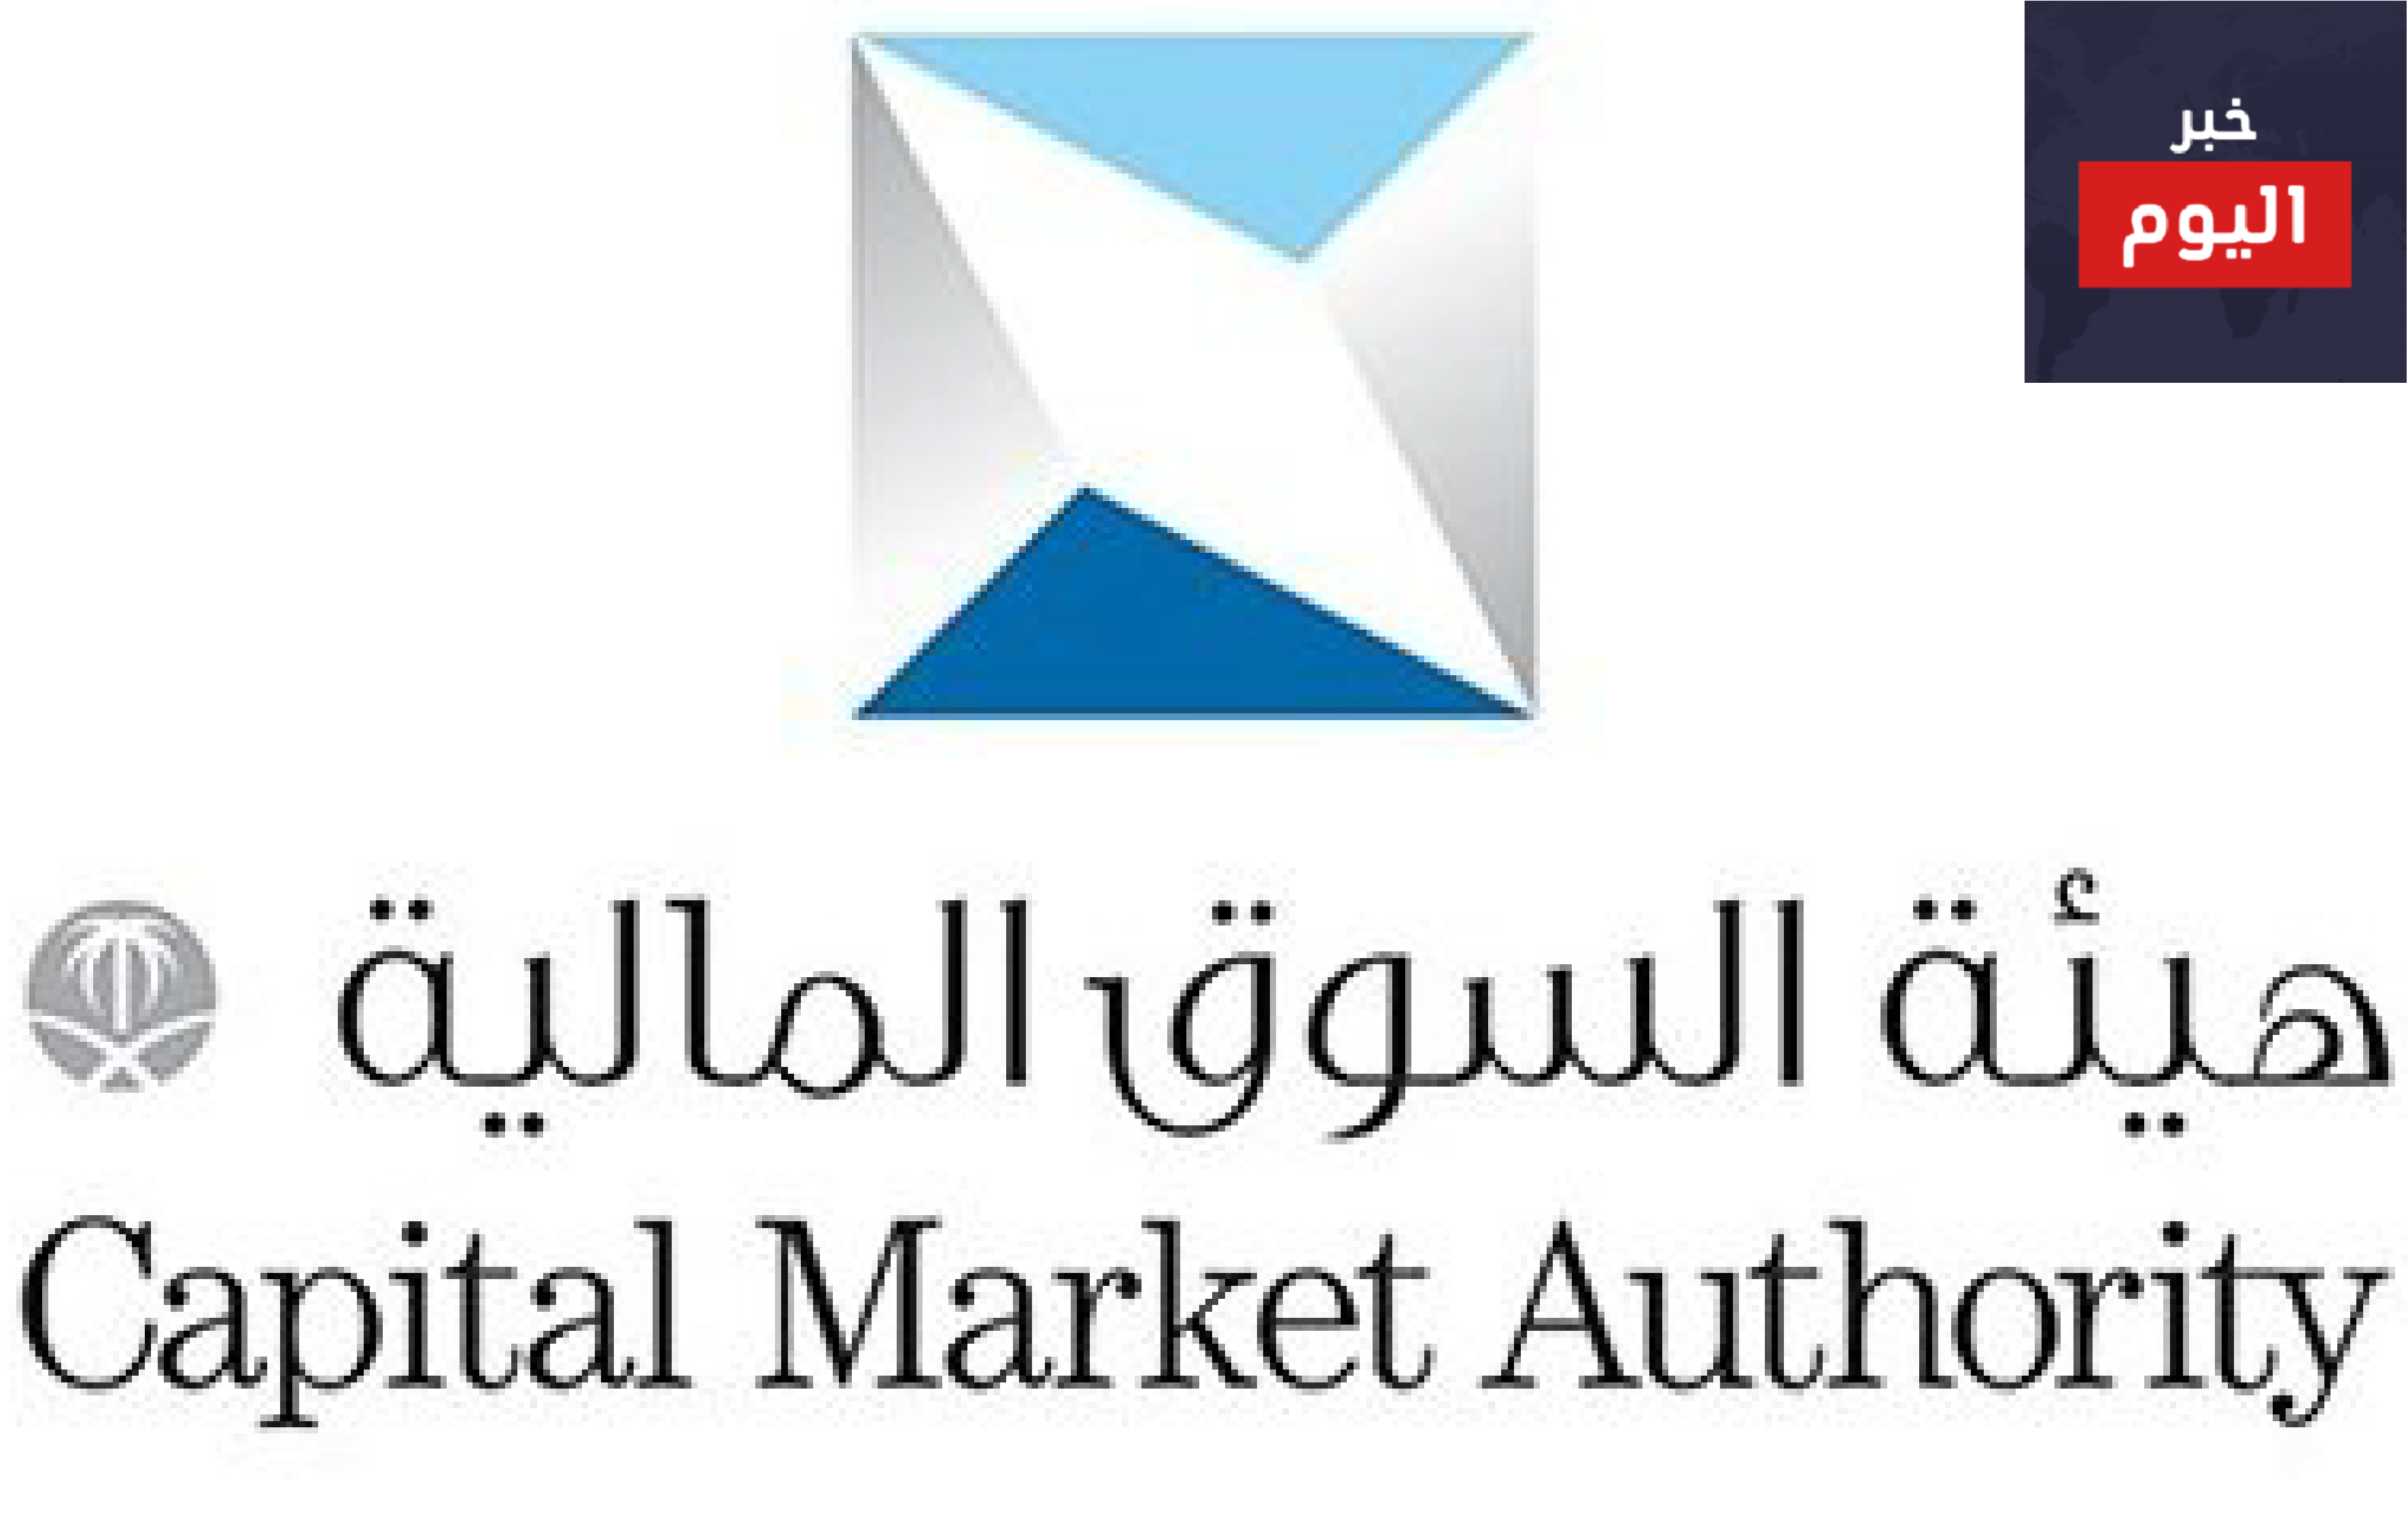 هيئة السوق المالية:نشأة الهيئة-خطة الهيئة-الخدمات الالكترونية